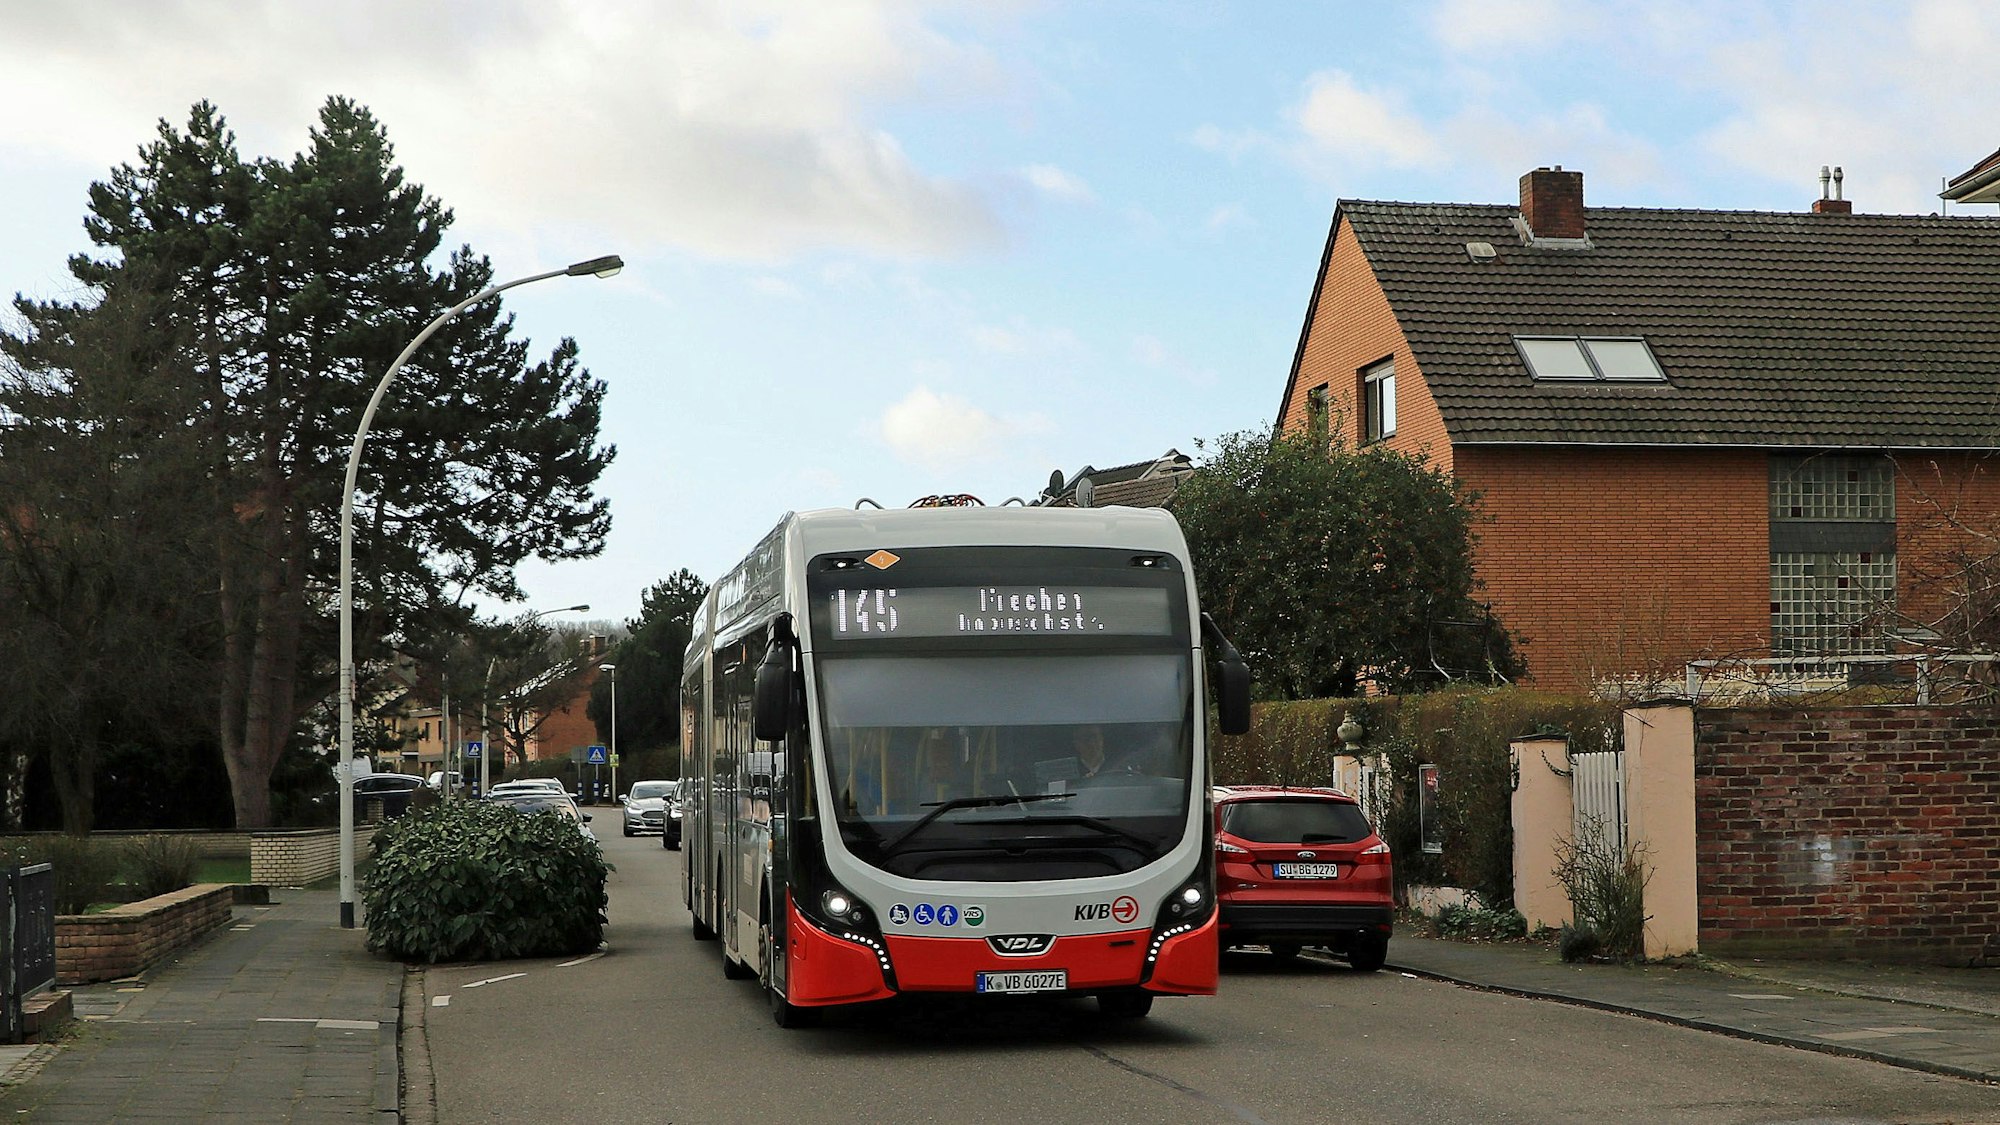 Das Foto zeigt die Buslinie 145 der KVB. Sie fährt wieder durch das Unterdorf von Frechen-Bachem.